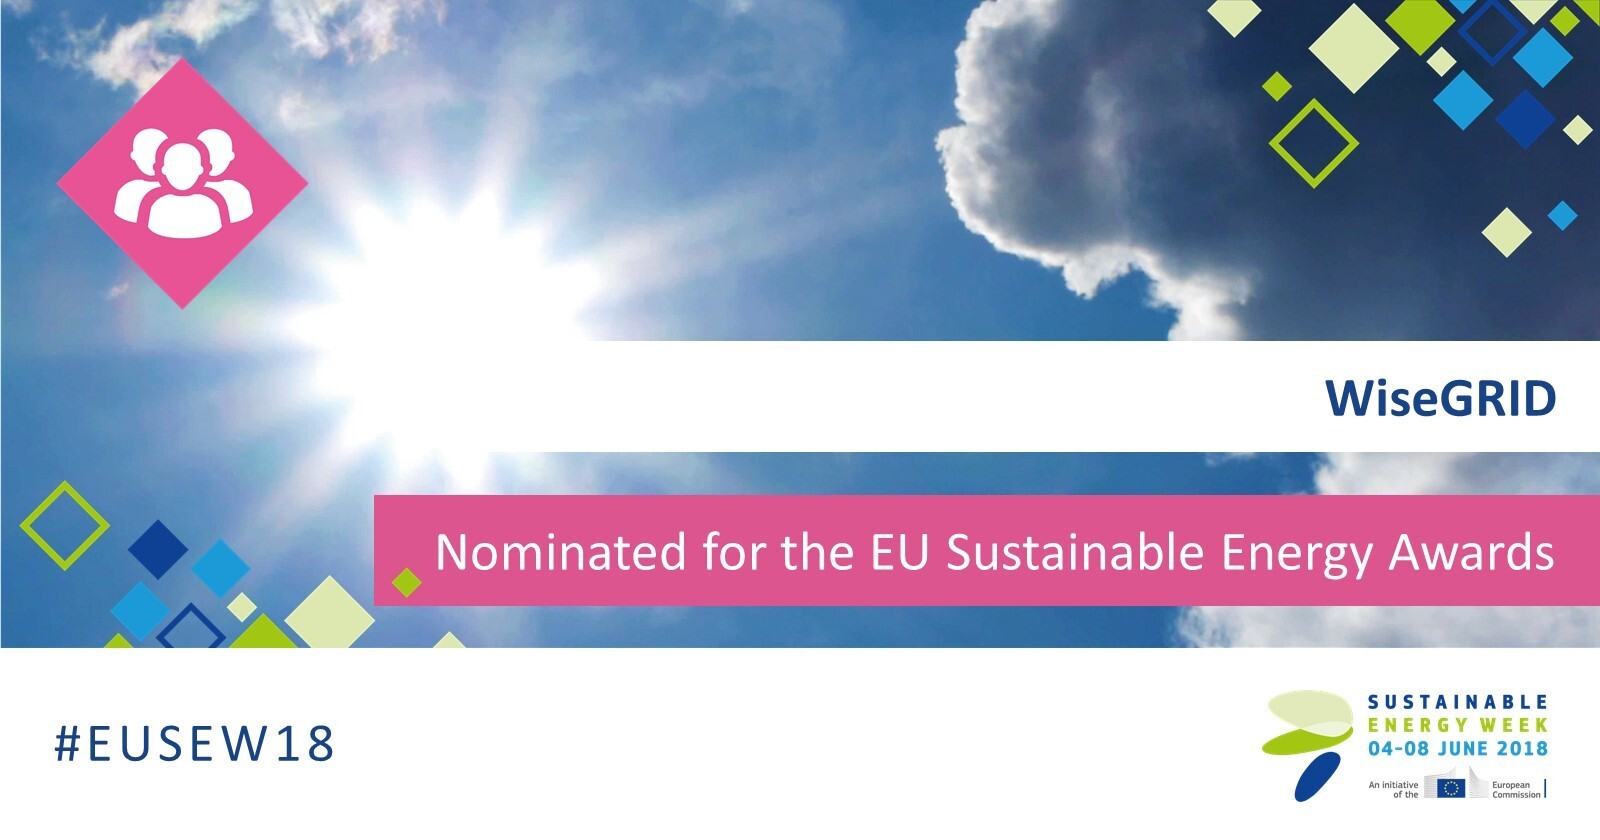 Image Wisegrid nominated for EU Sustainable Energy Week Awards